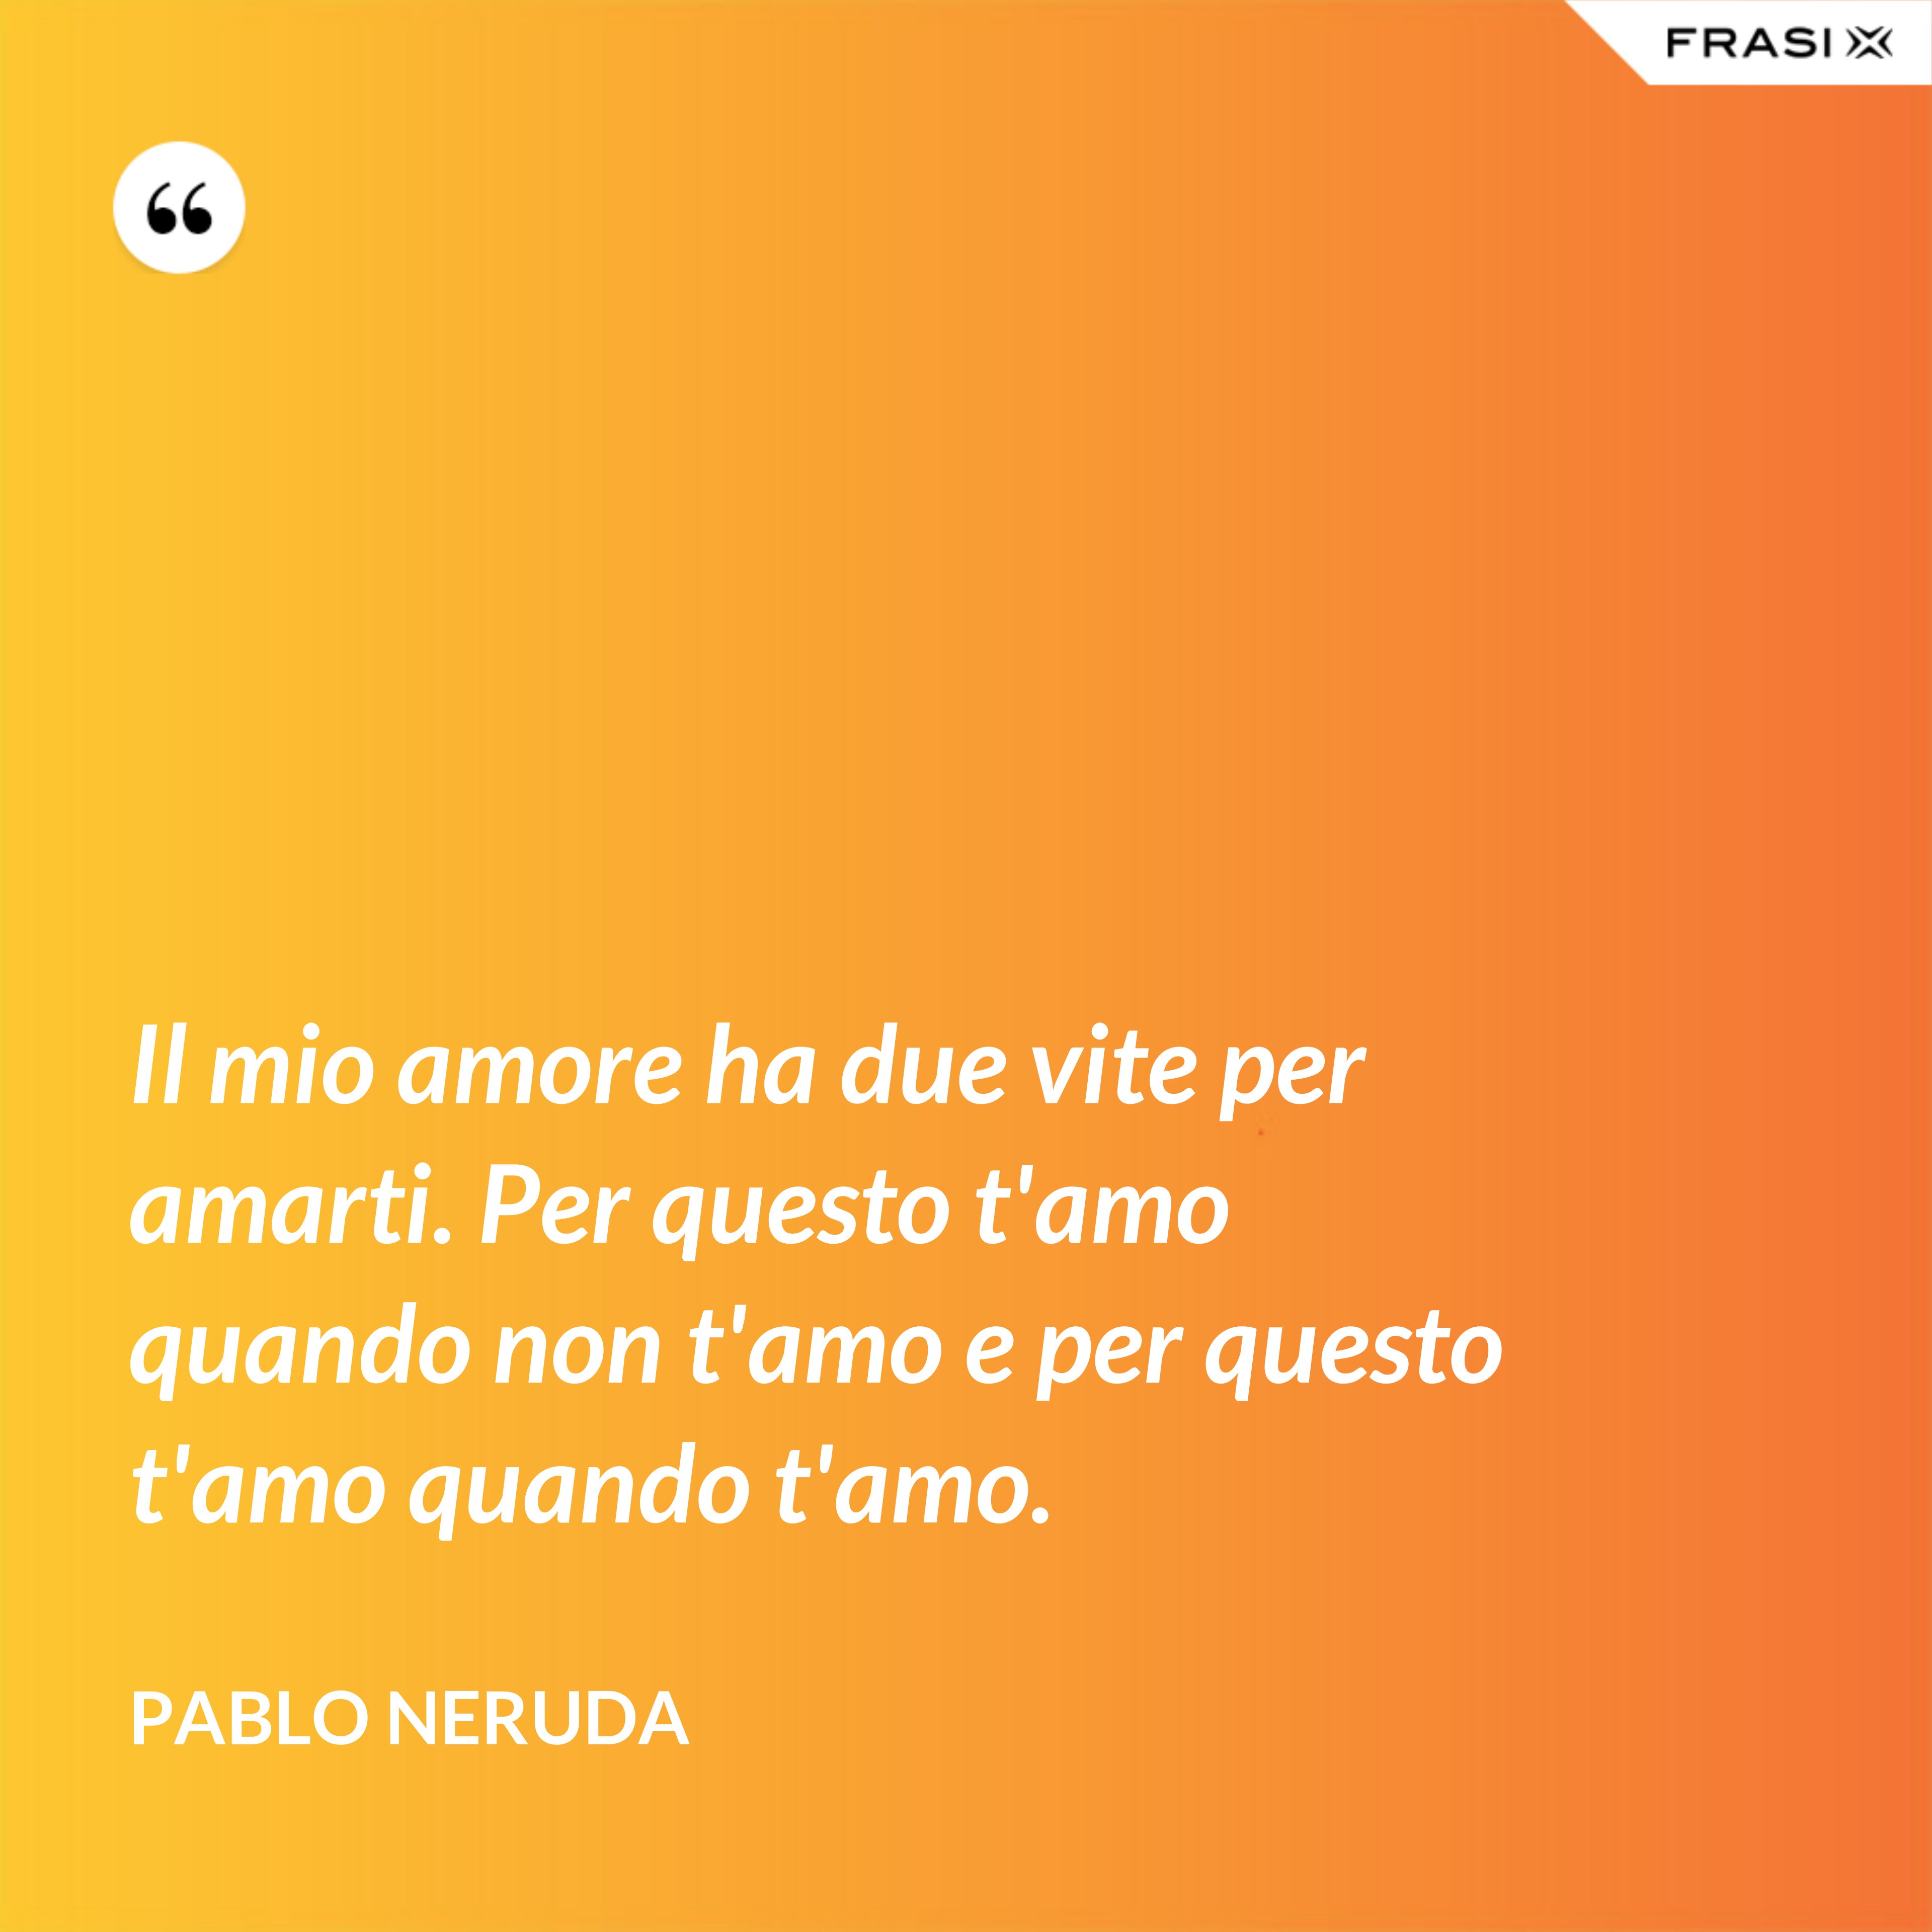 Il mio amore ha due vite per amarti. Per questo t'amo quando non t'amo e per questo t'amo quando t'amo. - Pablo Neruda